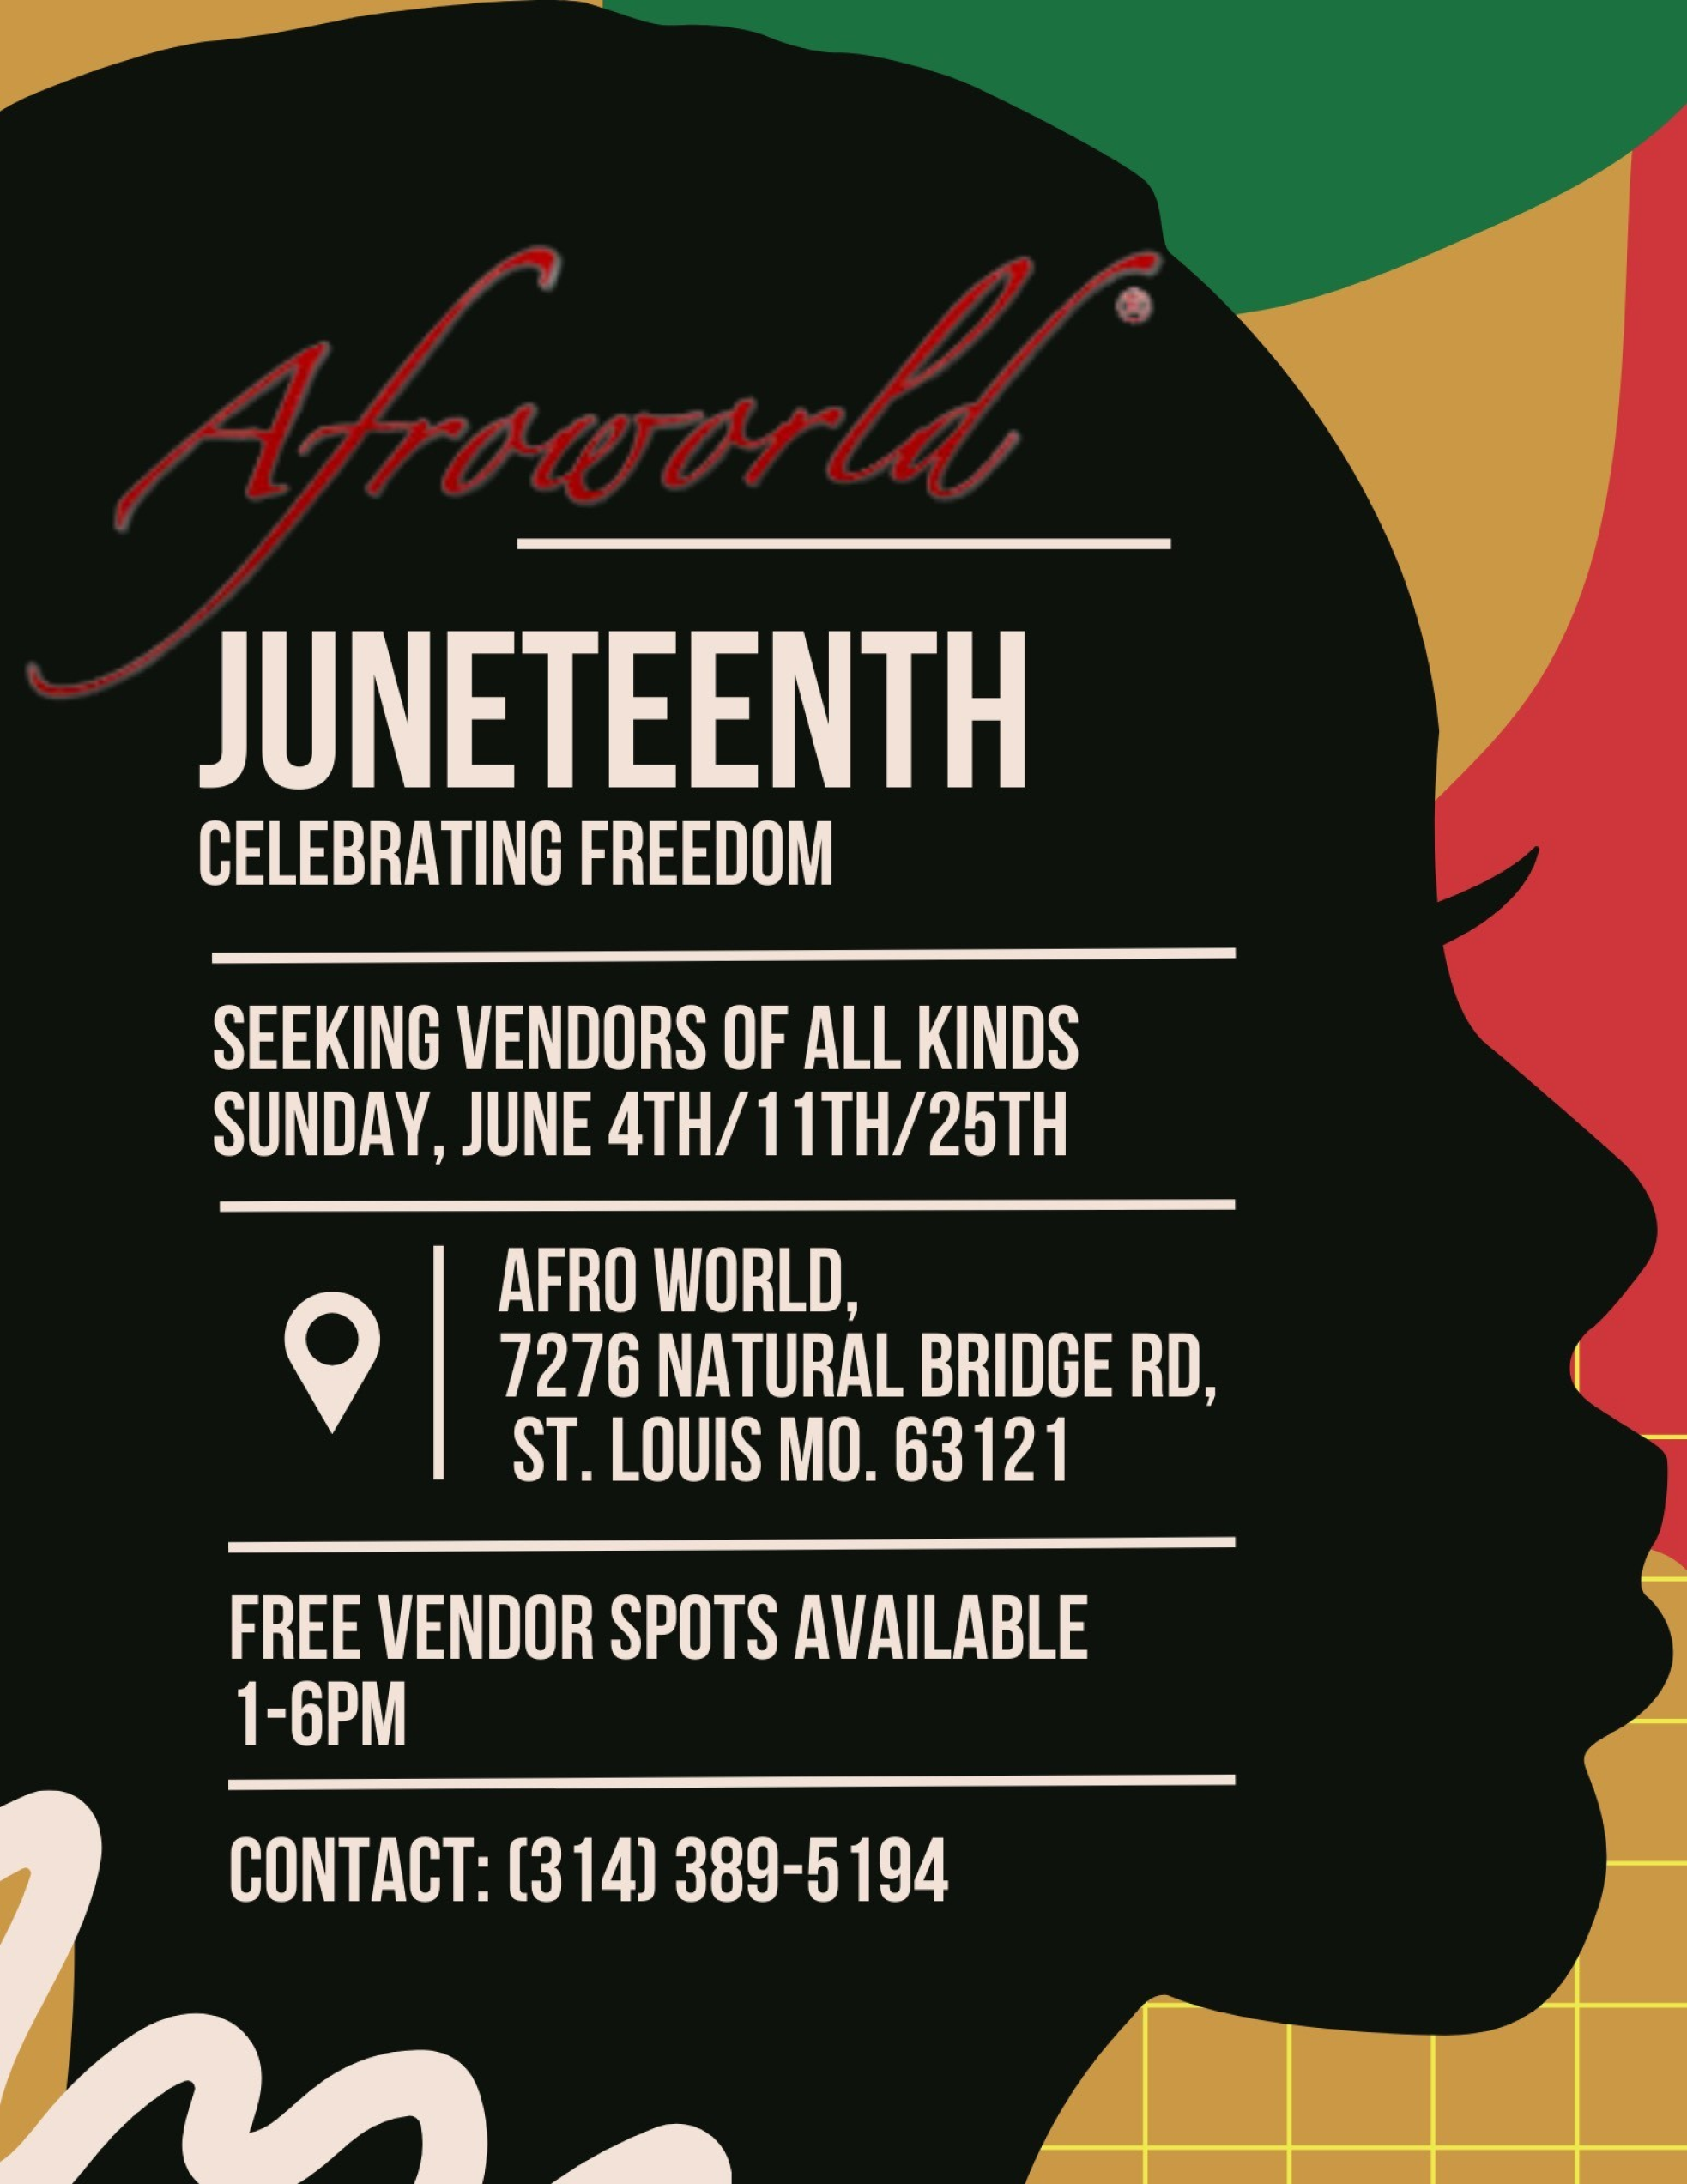 Afroworld Juneteenth Celebrating Freedom